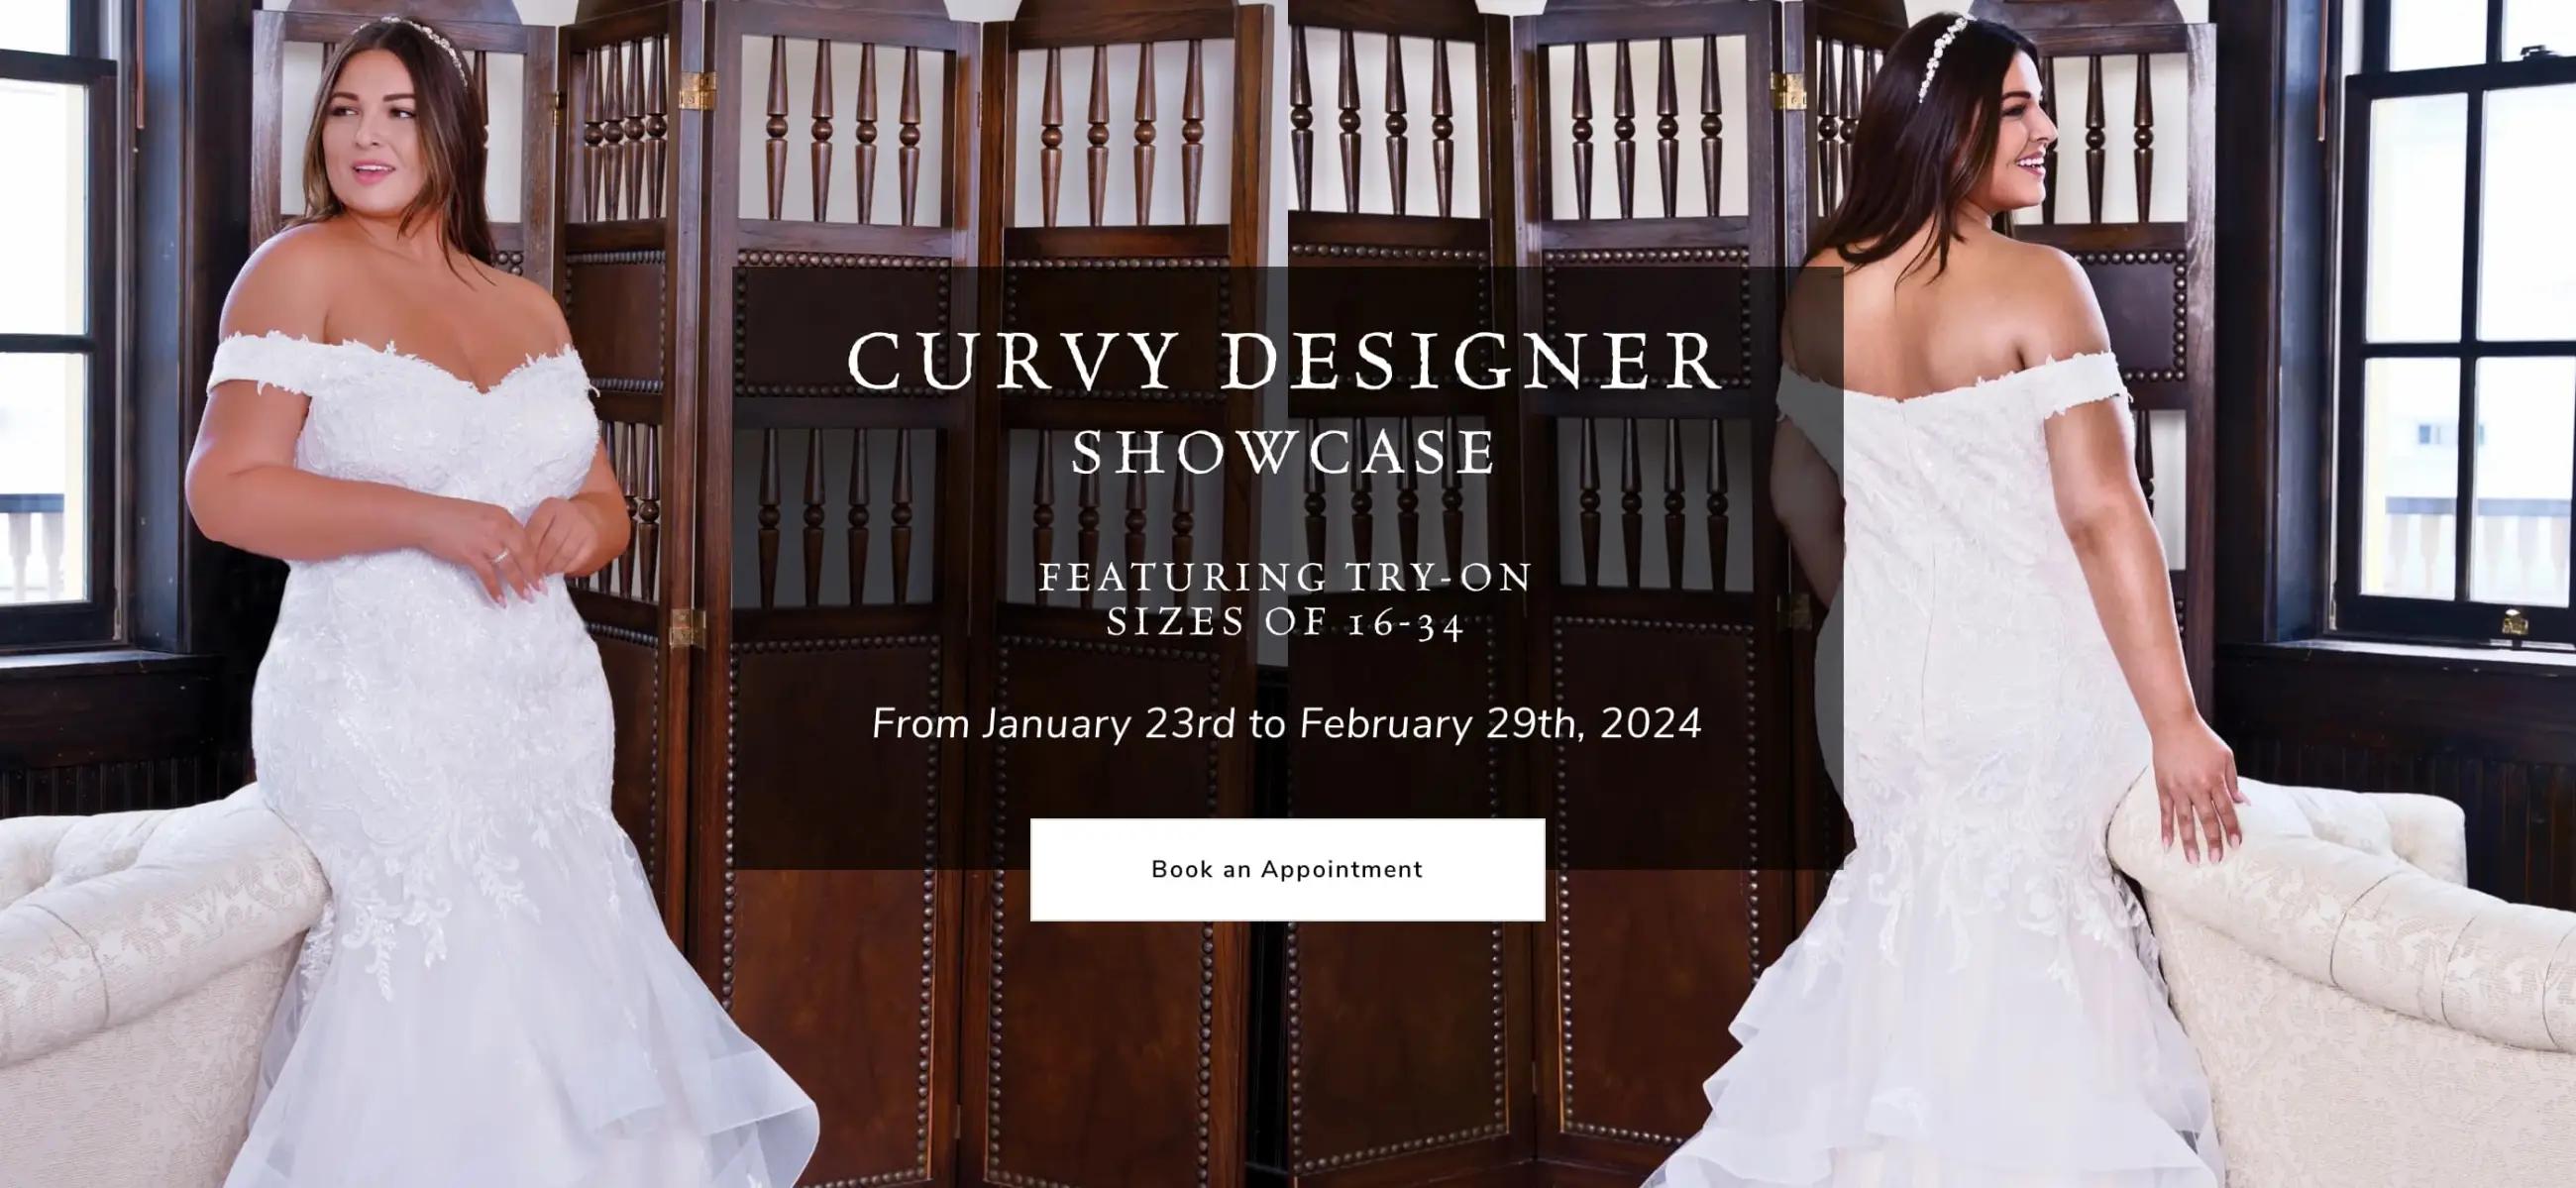 curvy designer showcase